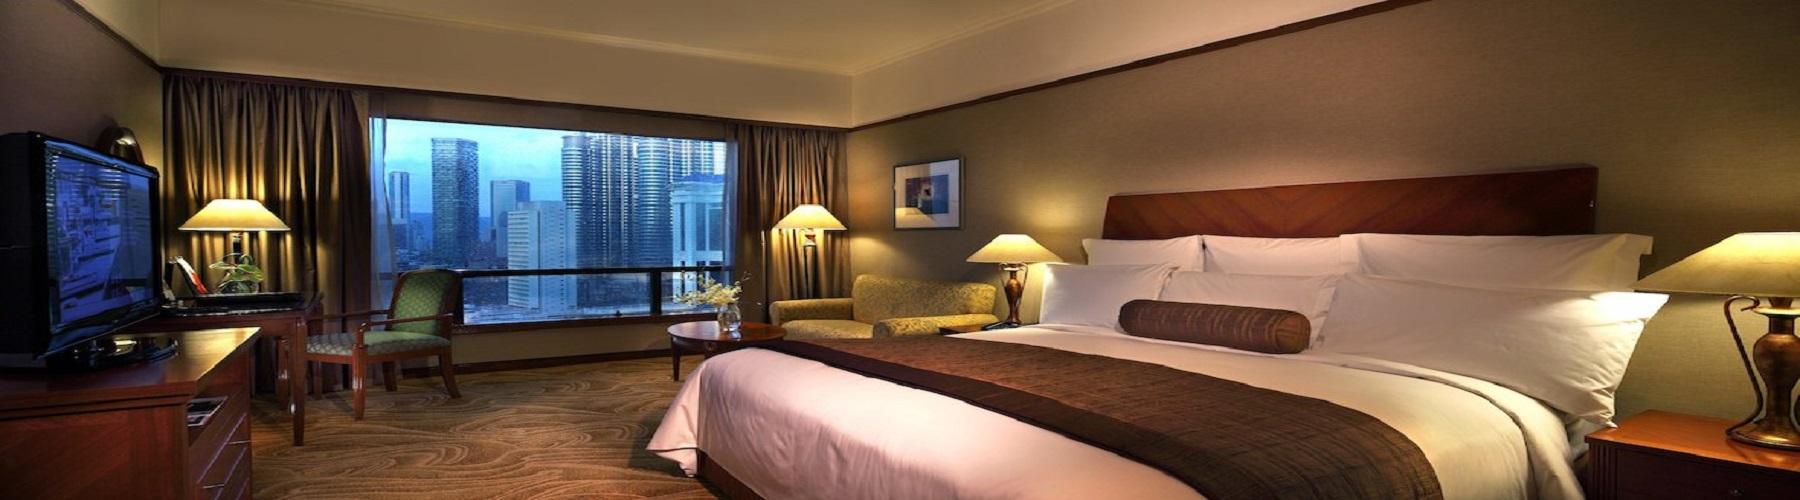 Забронировать отель Renaissance Hotel Kuala Lumpur